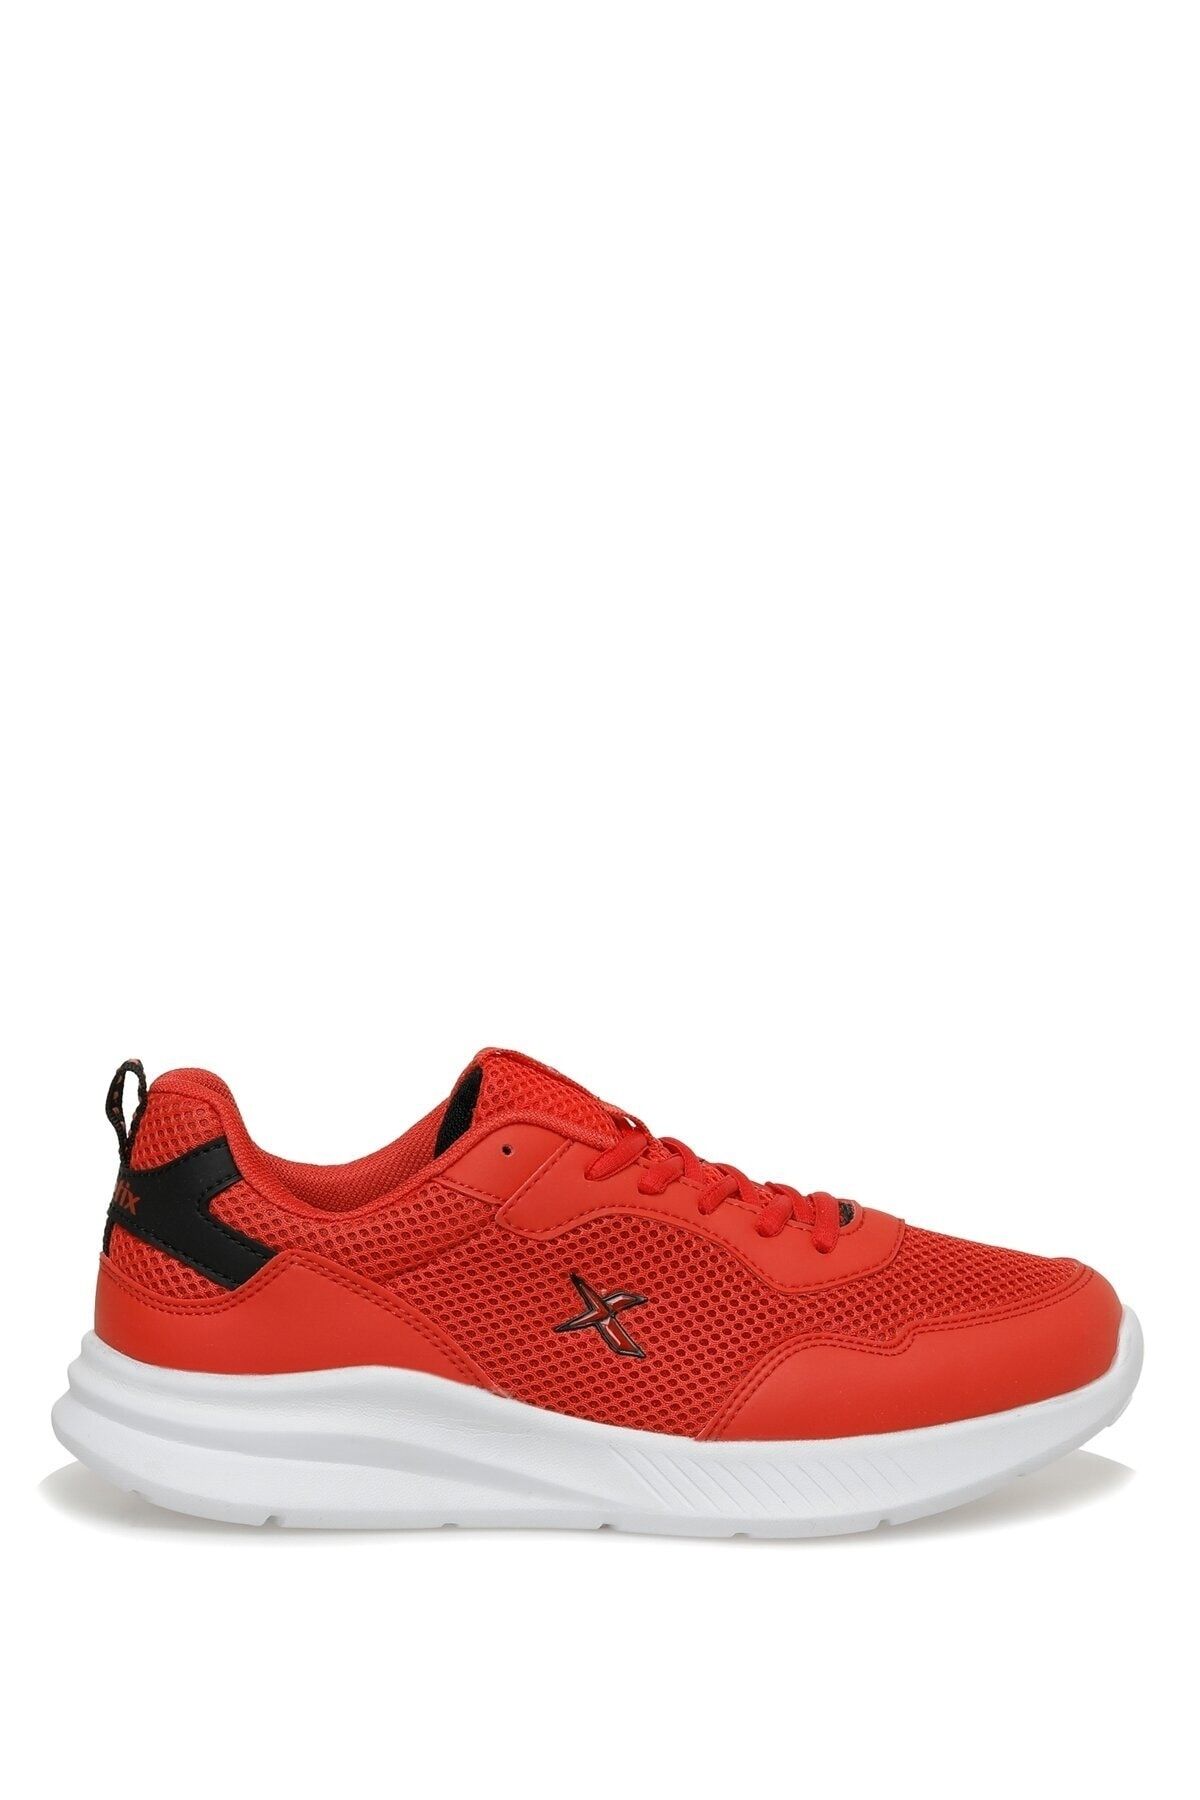 Kinetix Mınor Tx 3fx Kırmızı Erkek Koşu Ayakkabısı